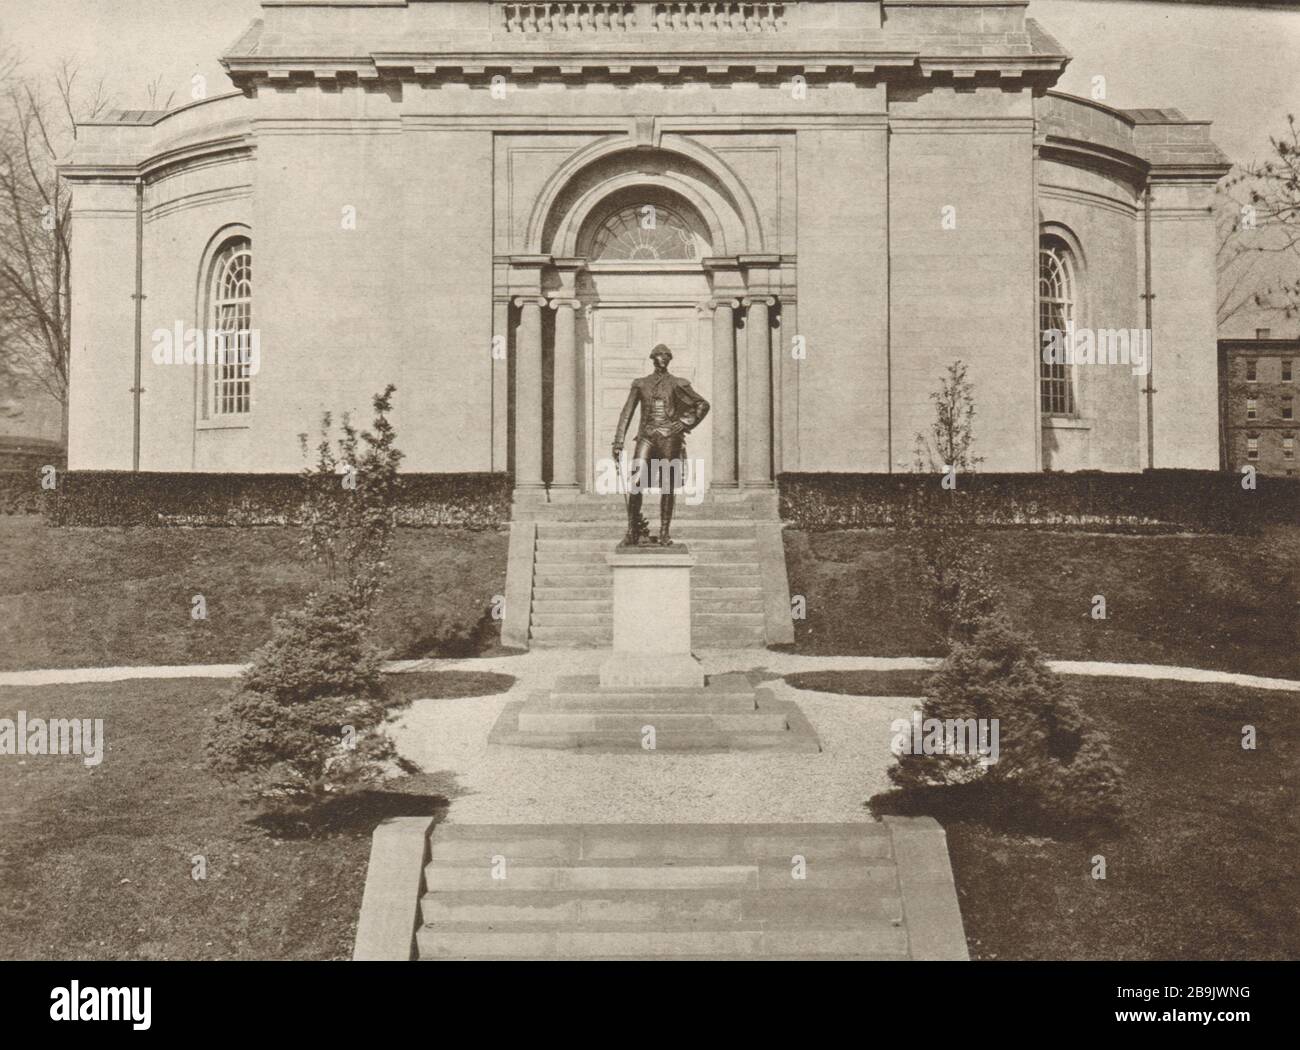 Lafayette College und Statue. Daniel Chester French, Bildhauer; Henry Bacon, Architekt (1922) Stockfoto